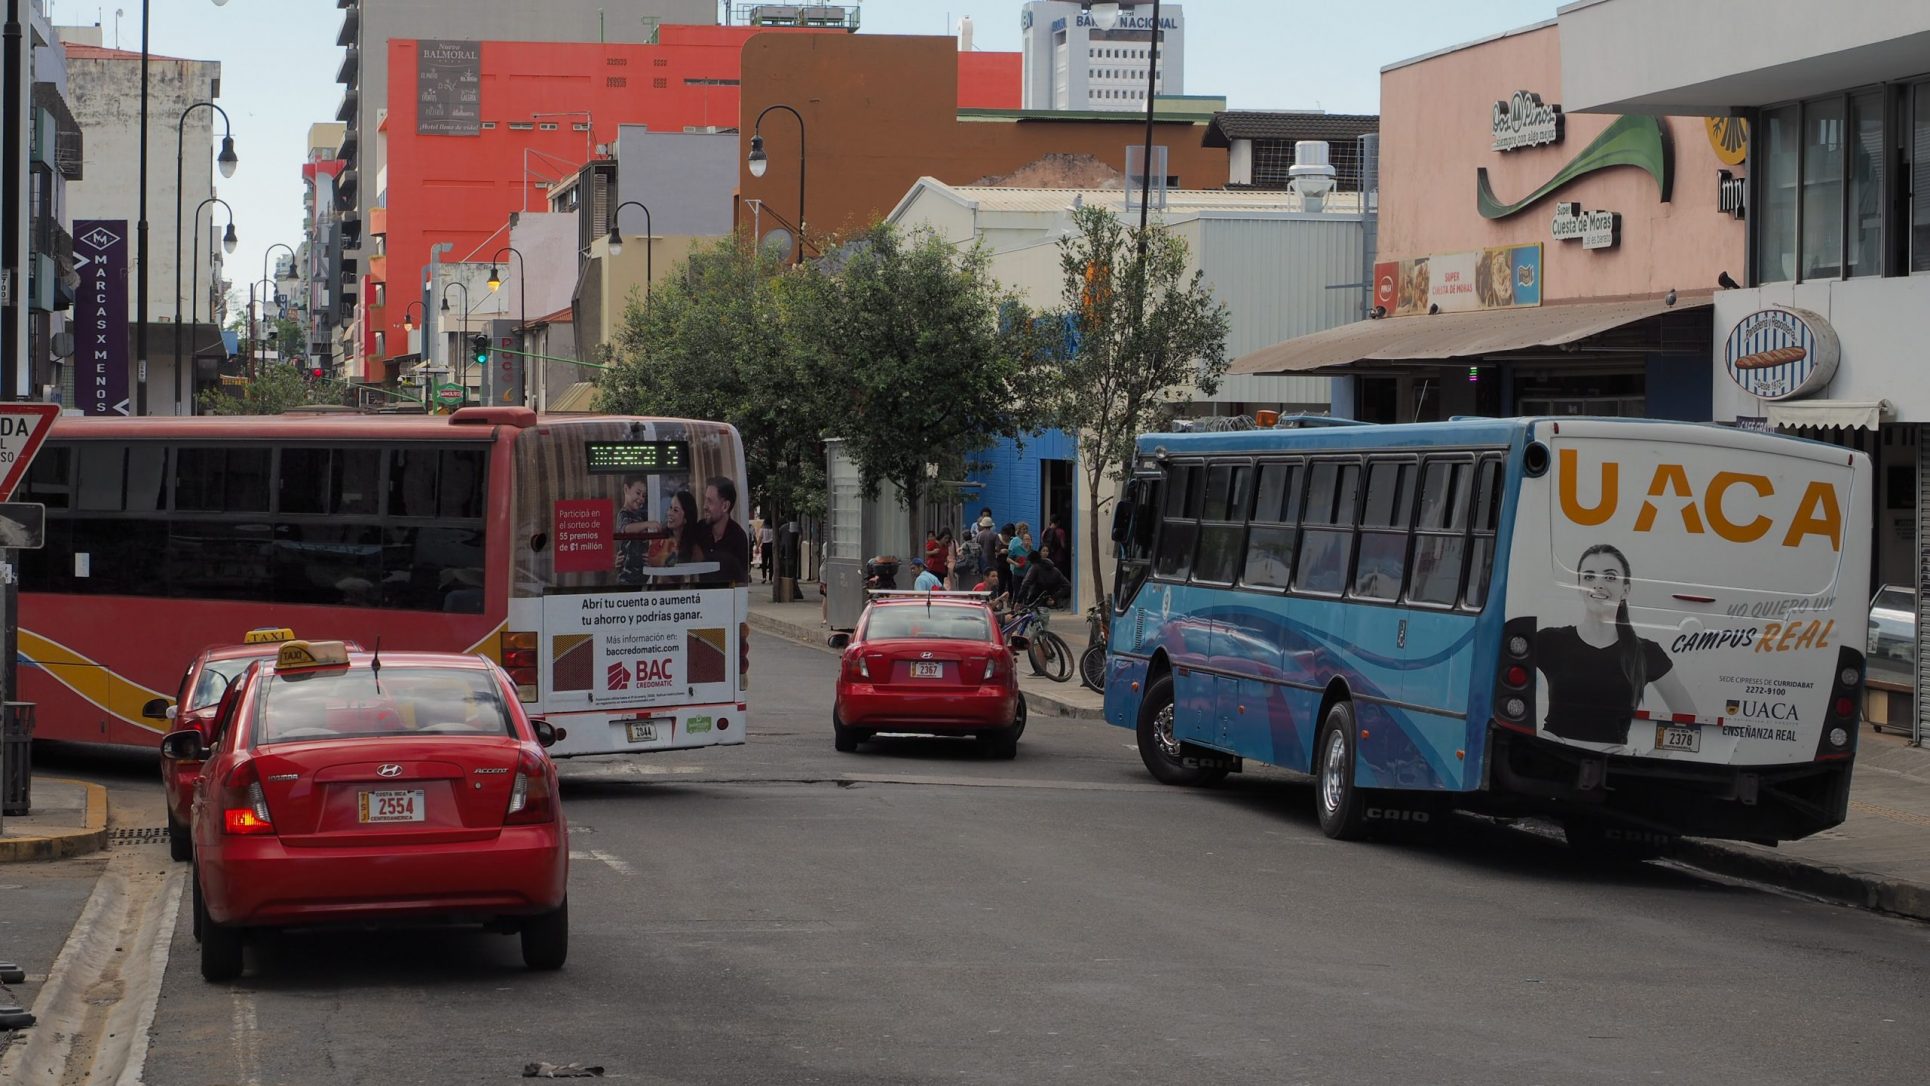 MOPT desconoce si autobuses que cumplieron su vida útil siguen en servicio